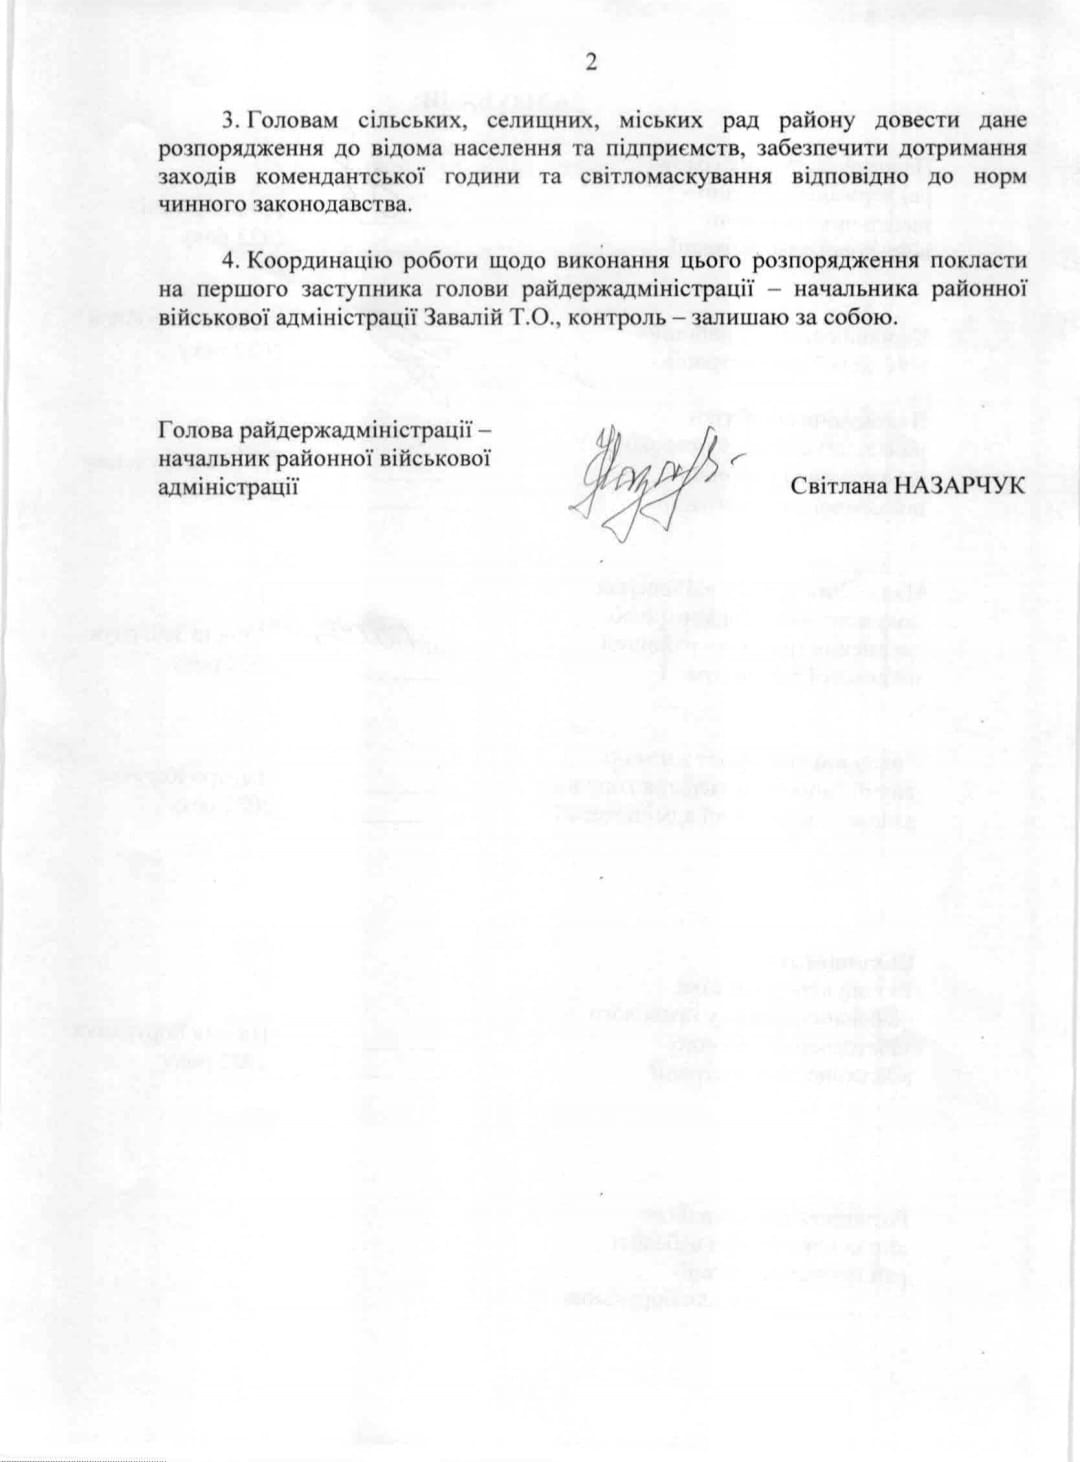 Соответствующее решение было подписано в РВА - || фото: snrda.dp.gov.ua